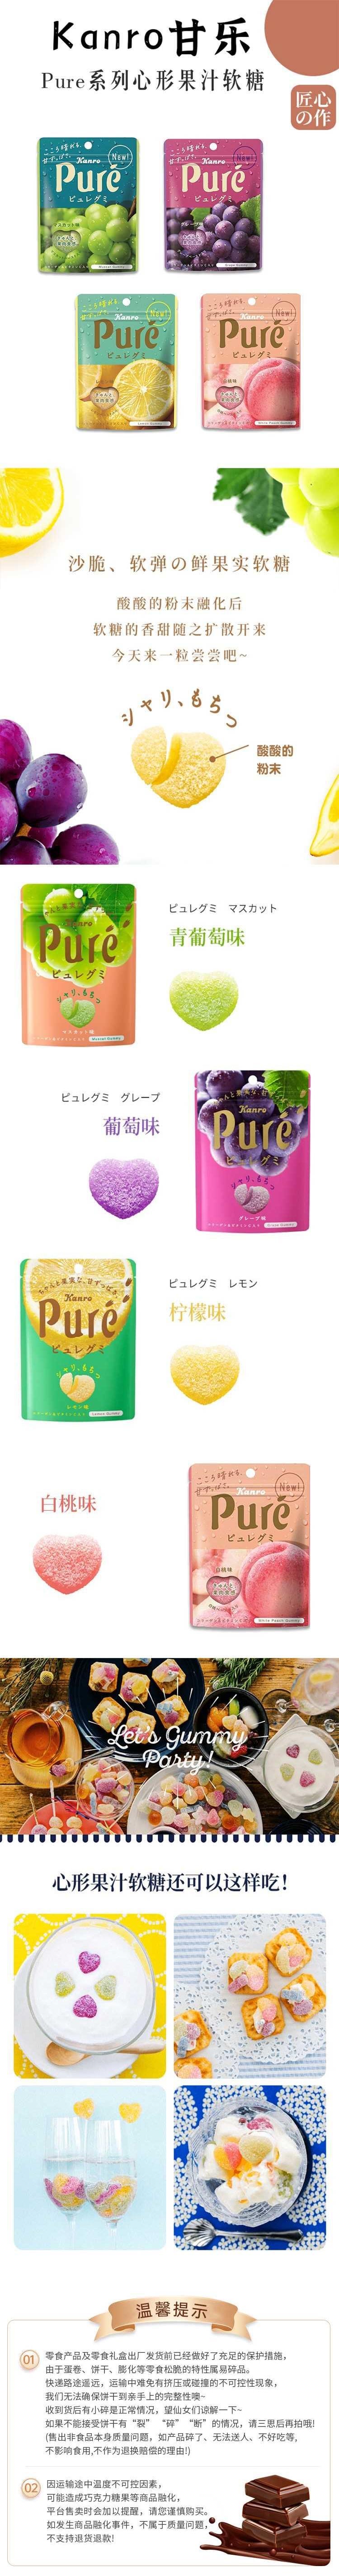 【日本直郵】KANRO甘樂 Pure果肉汁軟糖 56g 葡萄口味